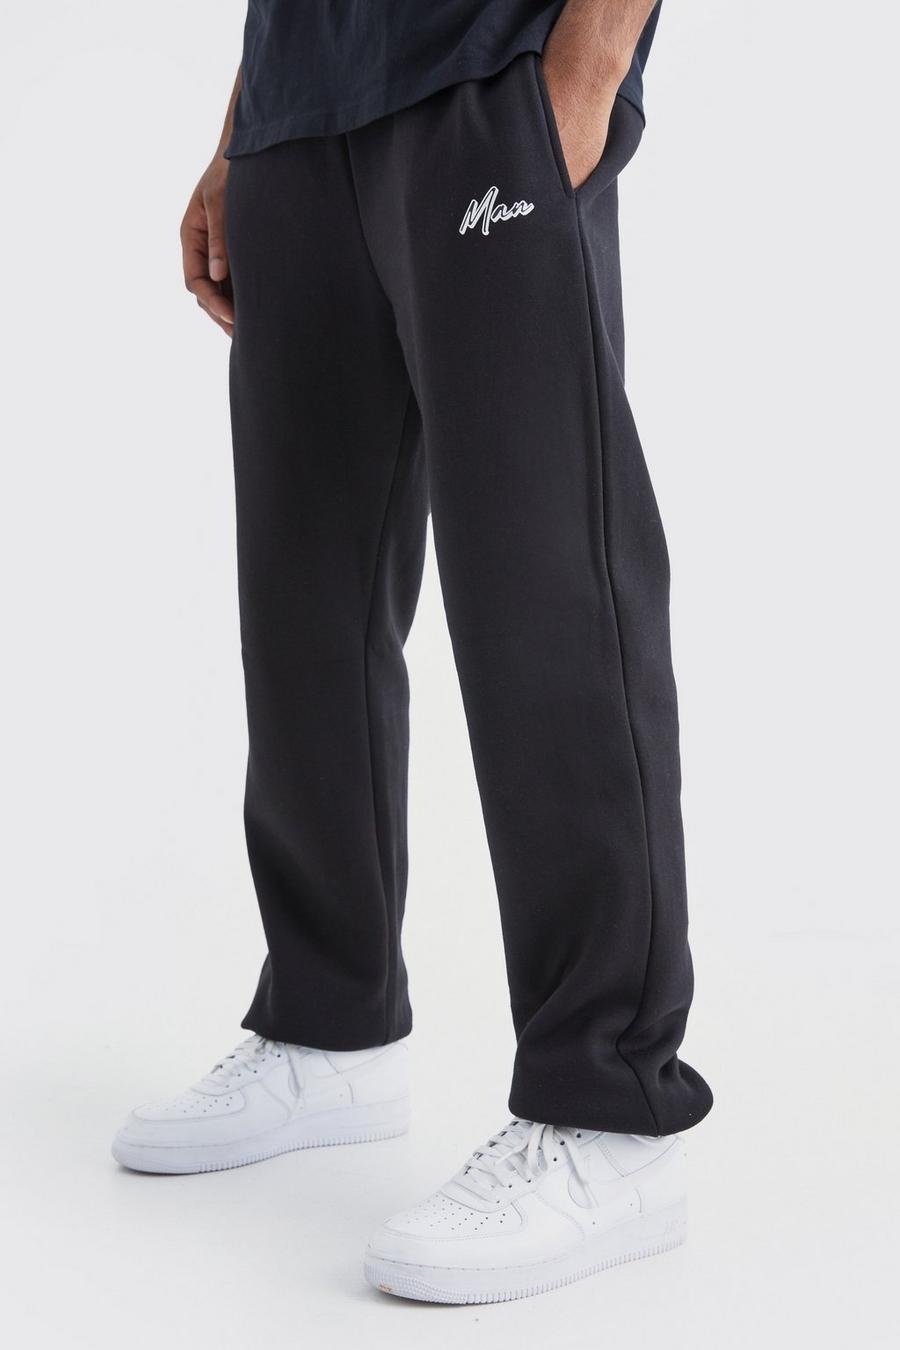 Pantaloni tuta Tall Core Fit con firma Man e logo, Black image number 1